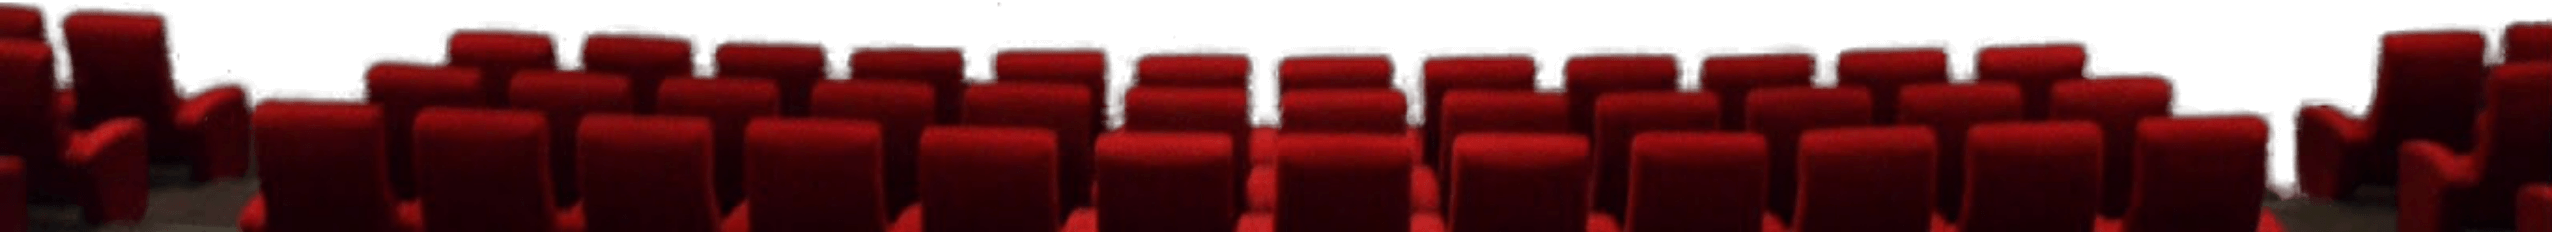 映画館の座席の画像